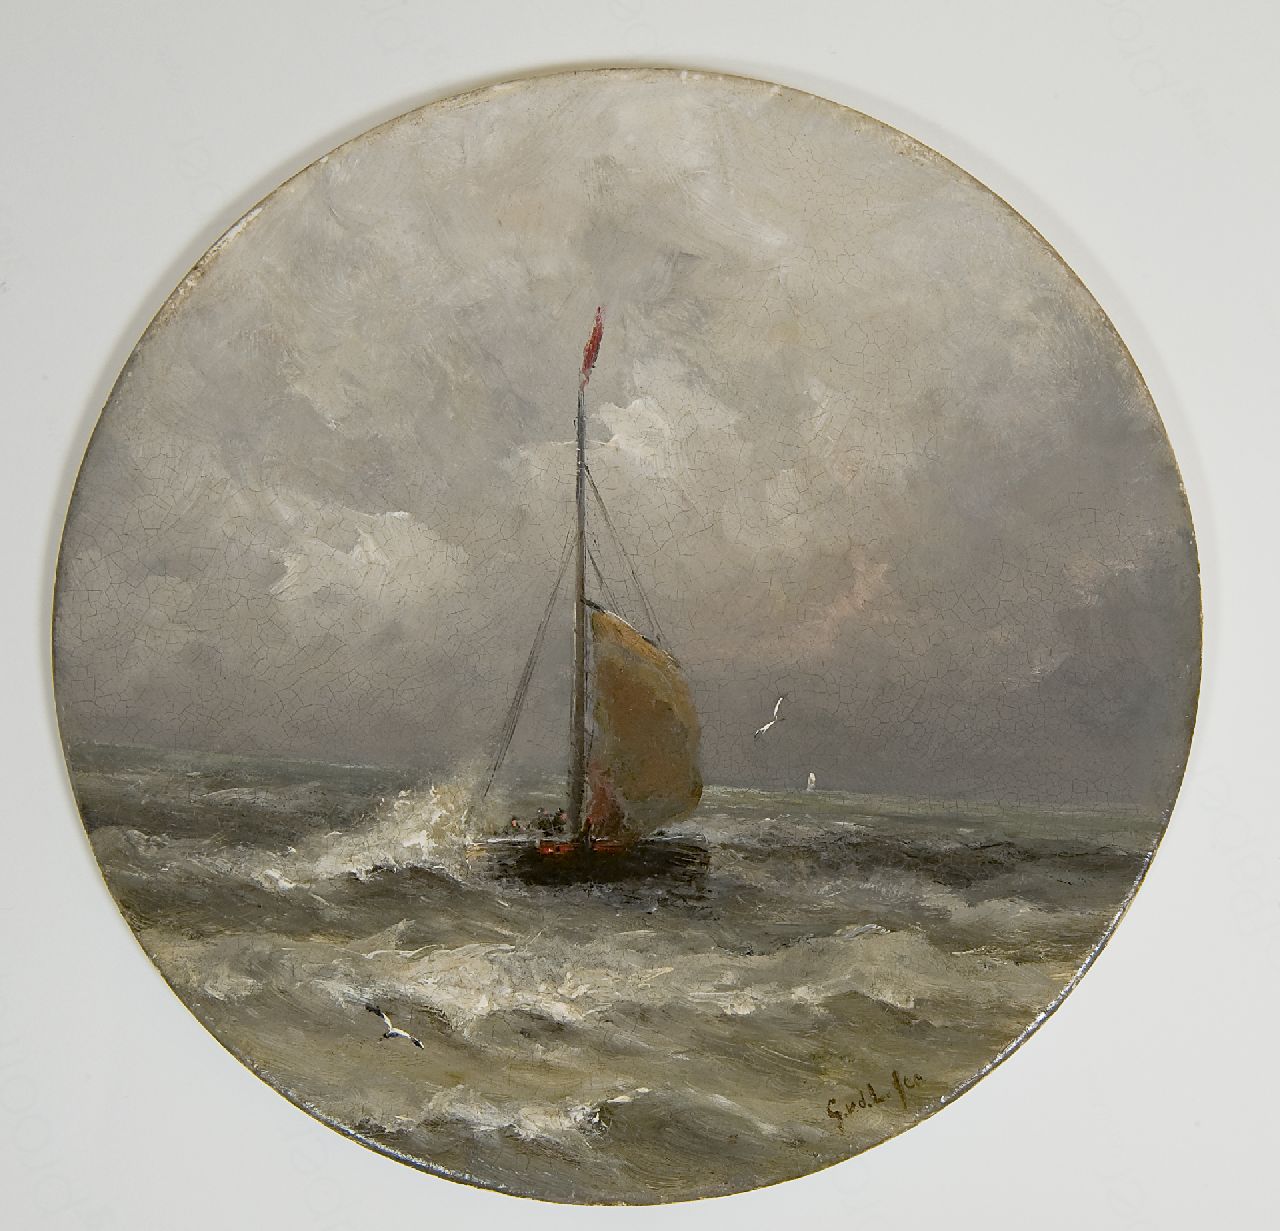 Laan G. van der | Gerard van der Laan, Bomschuit op zee, olieverf op porselein 28,3 x 28,3 cm, gesigneerd met initialen rechtsonder